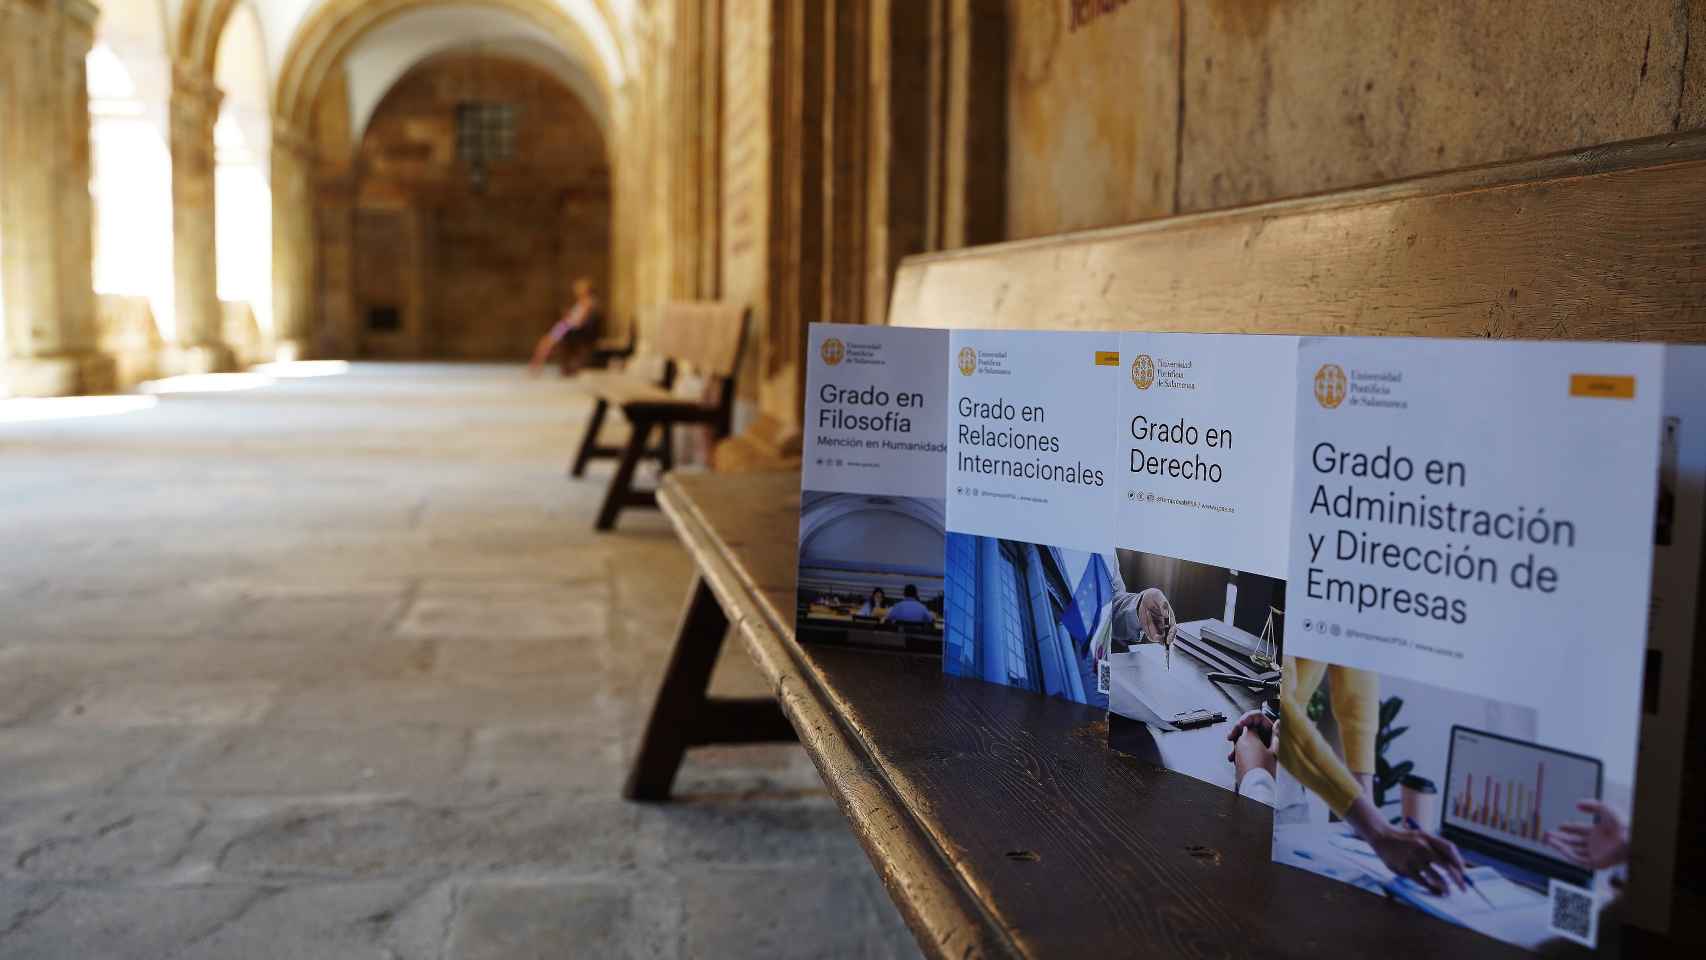 Oferta académica online de la Universidad Pontificia de Salamanca